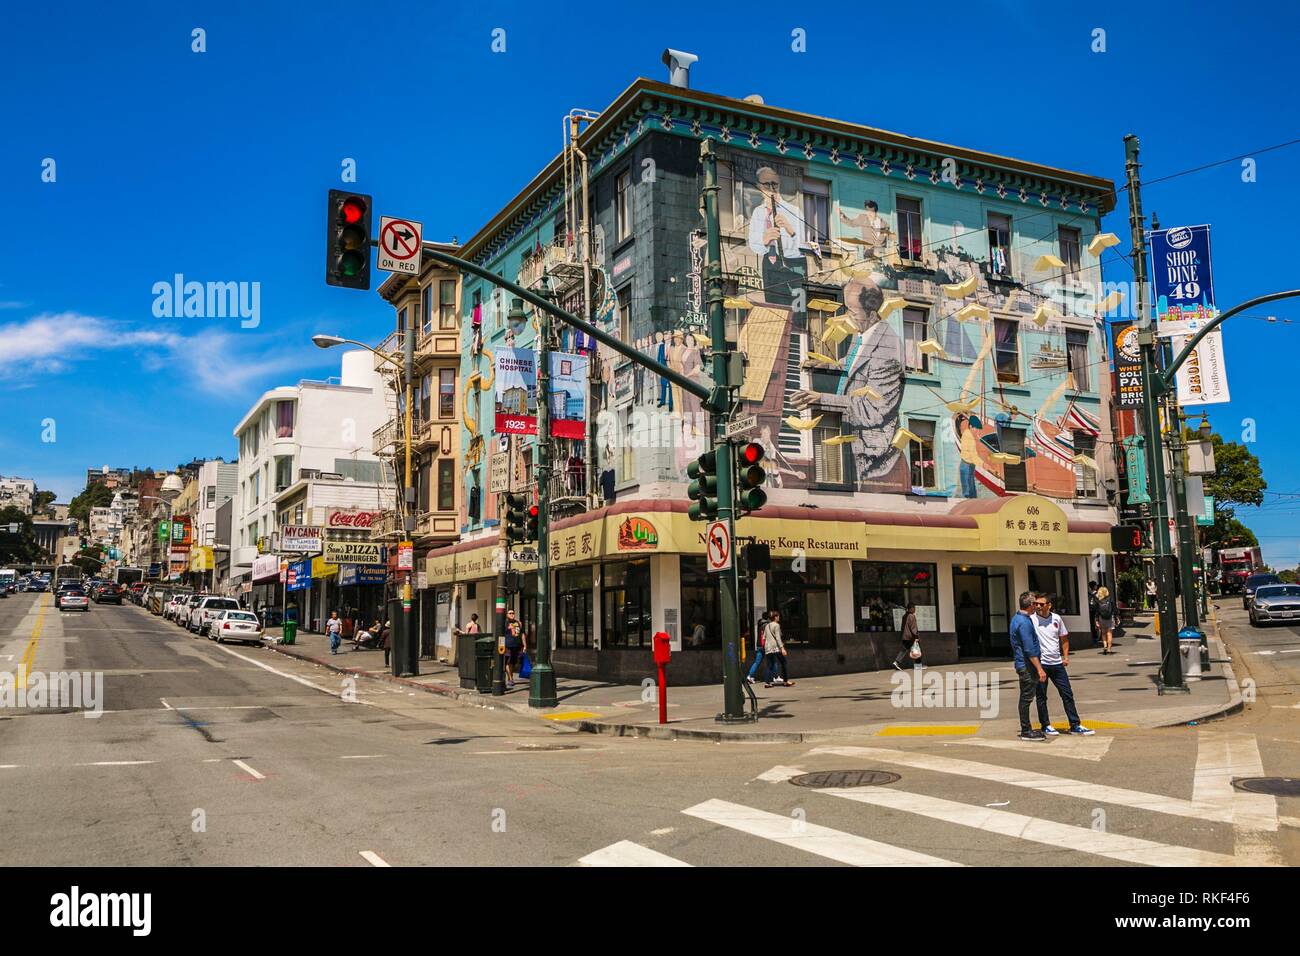 Schnittpunkt zwischen dem Broadway und der Columbus Avenue. Little Italy. North Beach Gegend. San Francisco. Kalifornien, USA Stockfoto